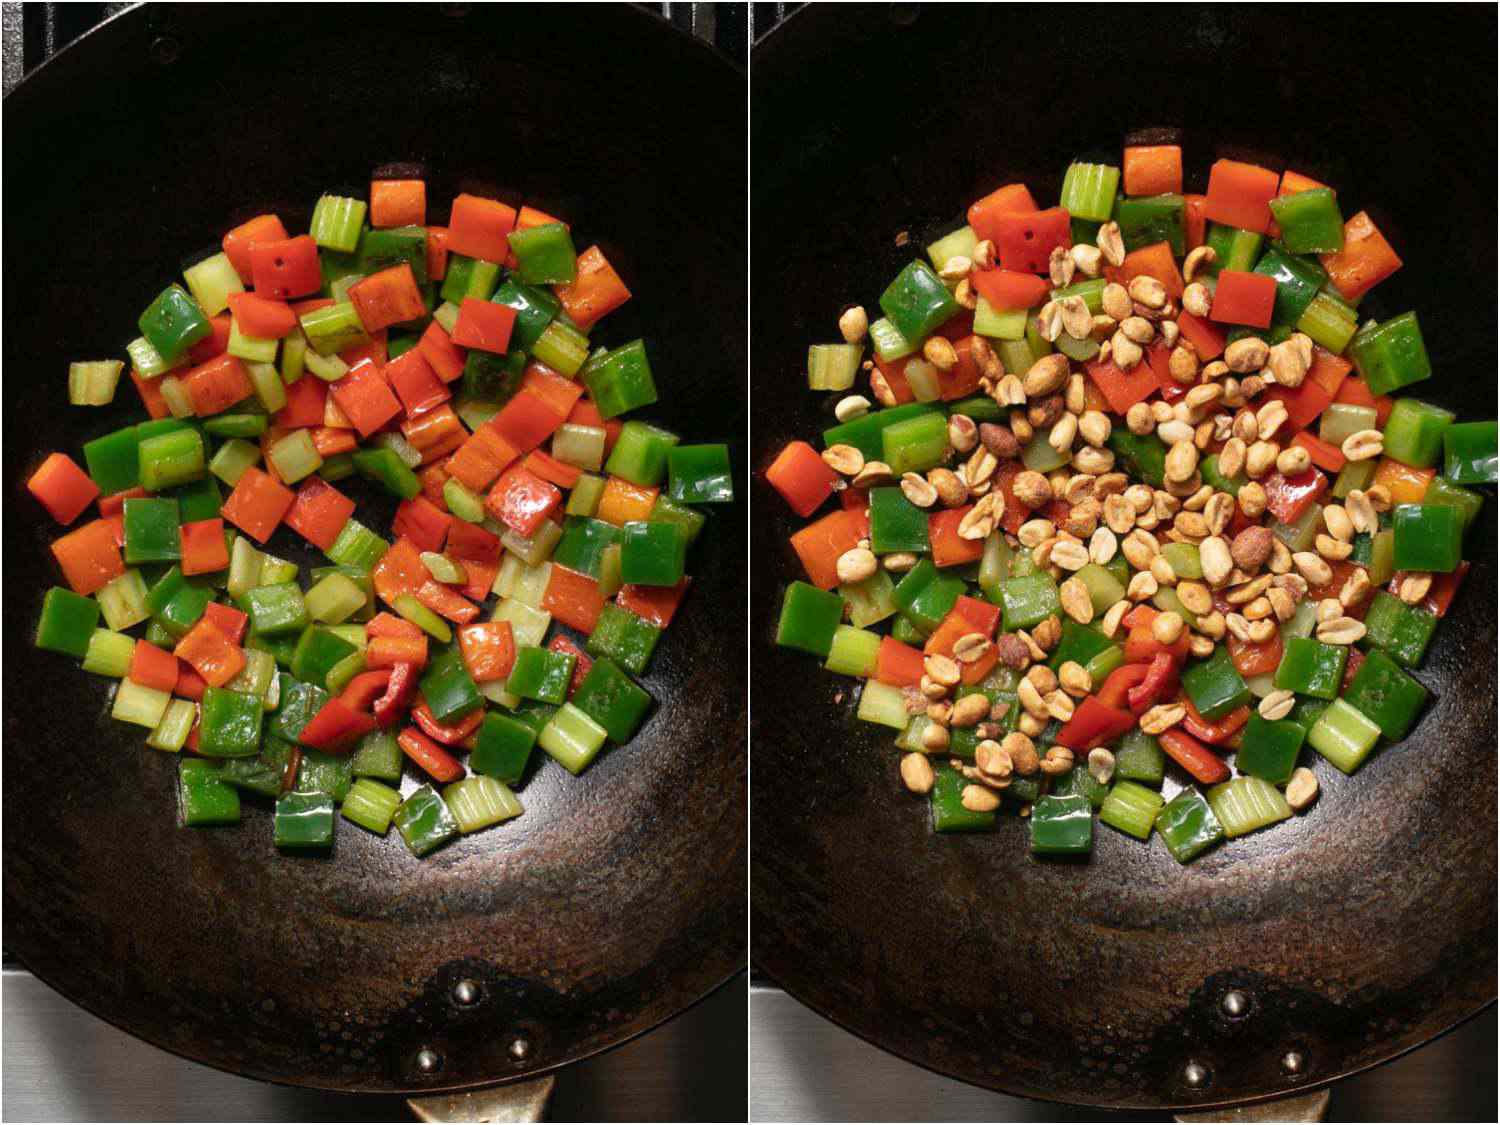 照片拼贴显示炒青椒,芹菜,然后添加花生,takeout-style宫保鸡丁。gydF4y2Ba